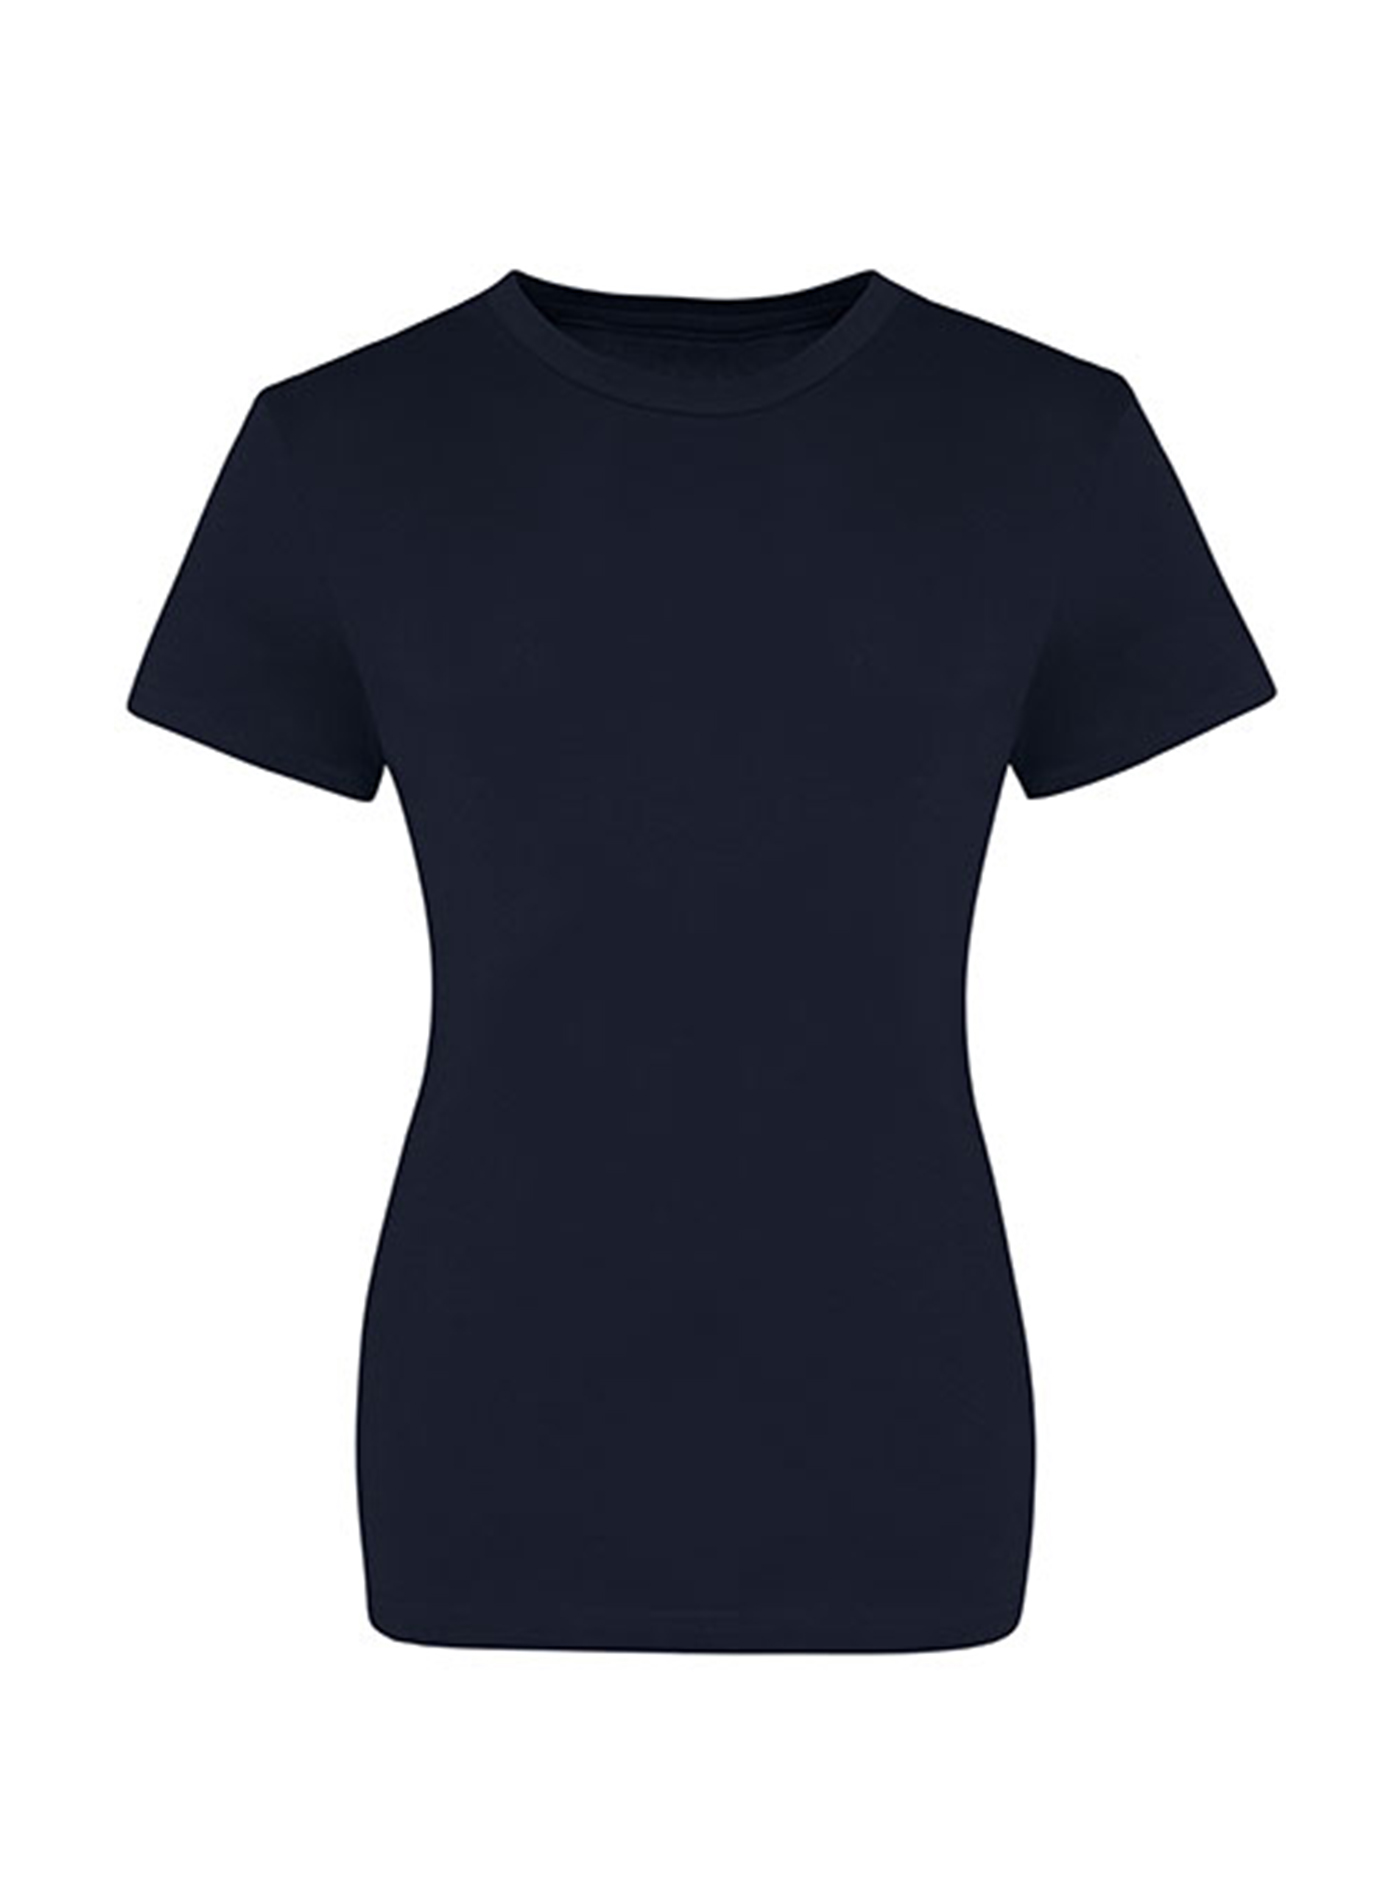 Dámské tričko Just Ts - Námořní modrá XS